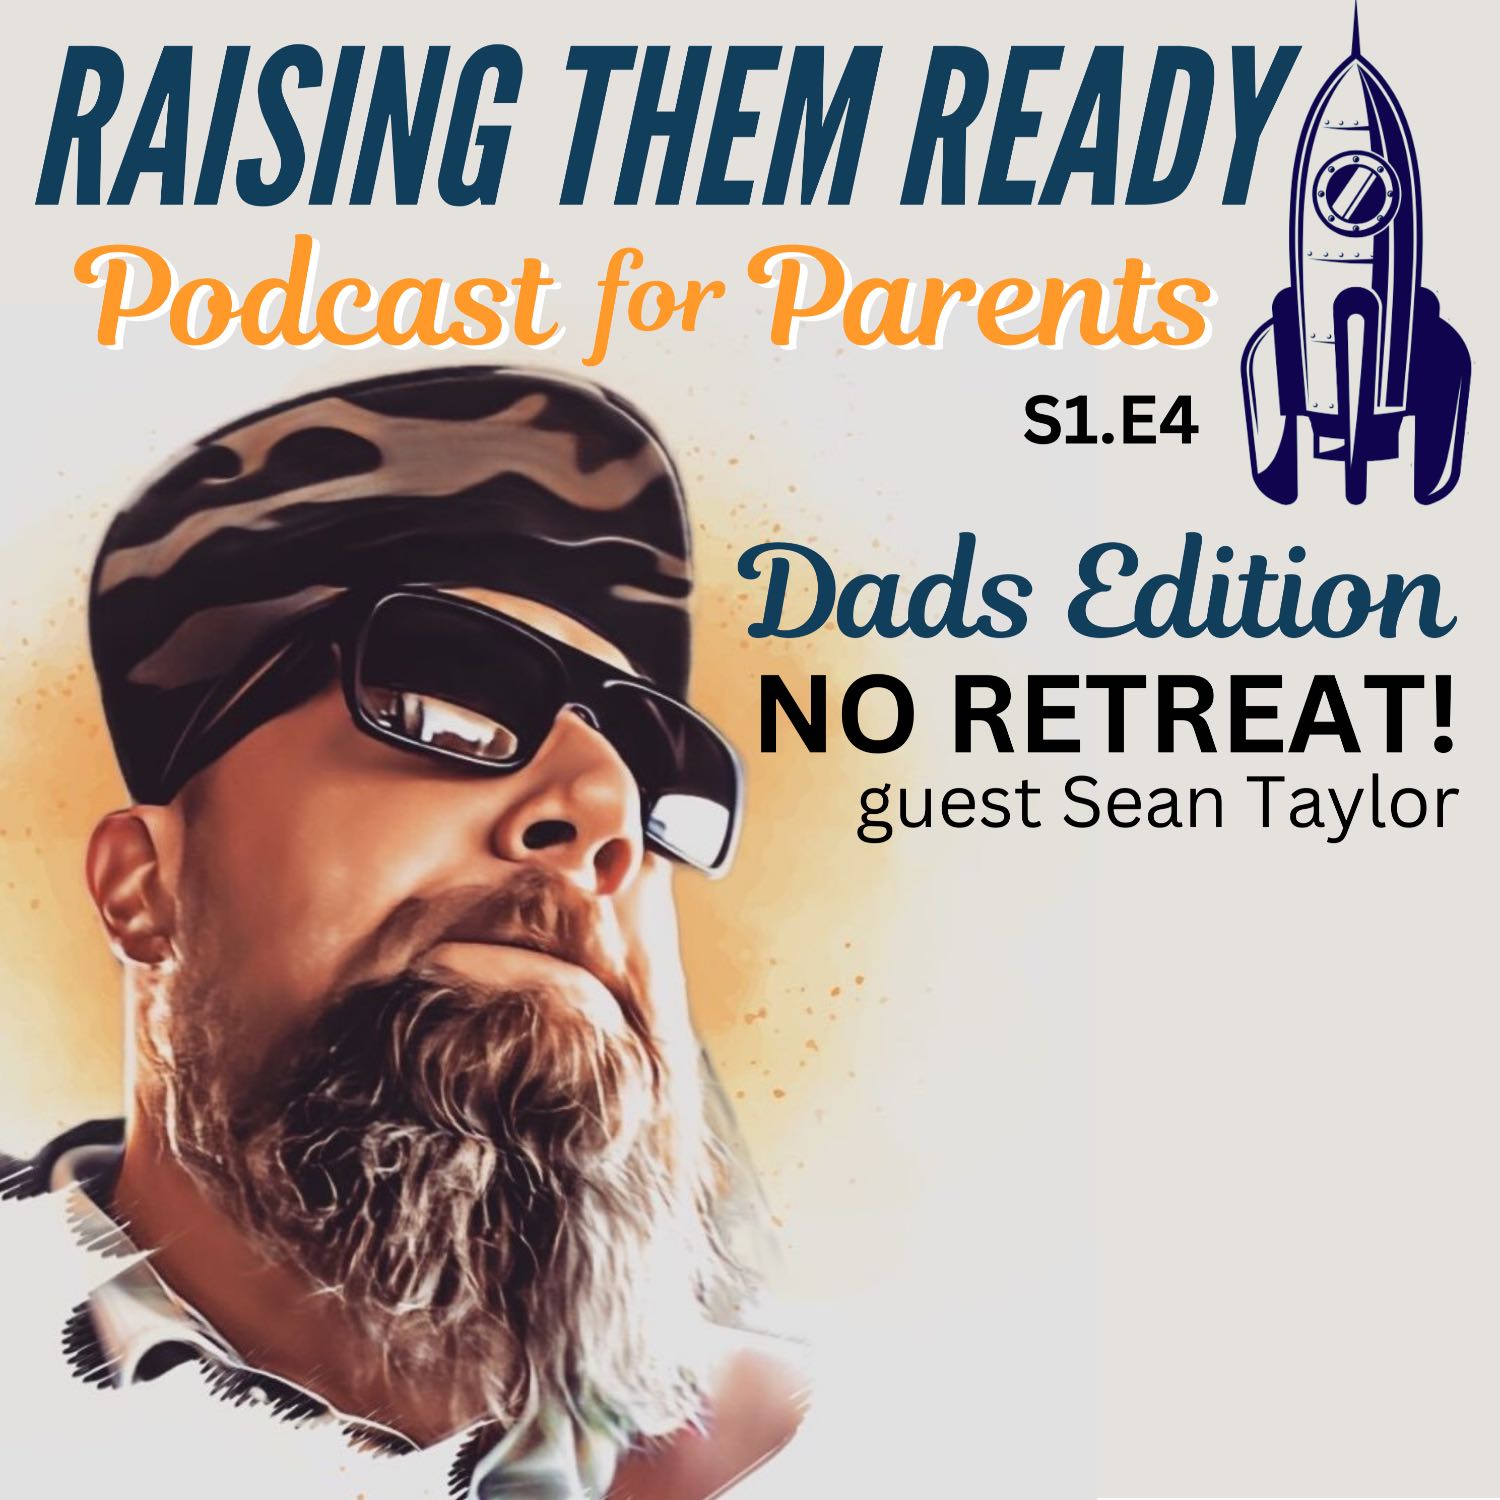 NO RETREAT! - Dad's Edition, with guest Sean Taylor